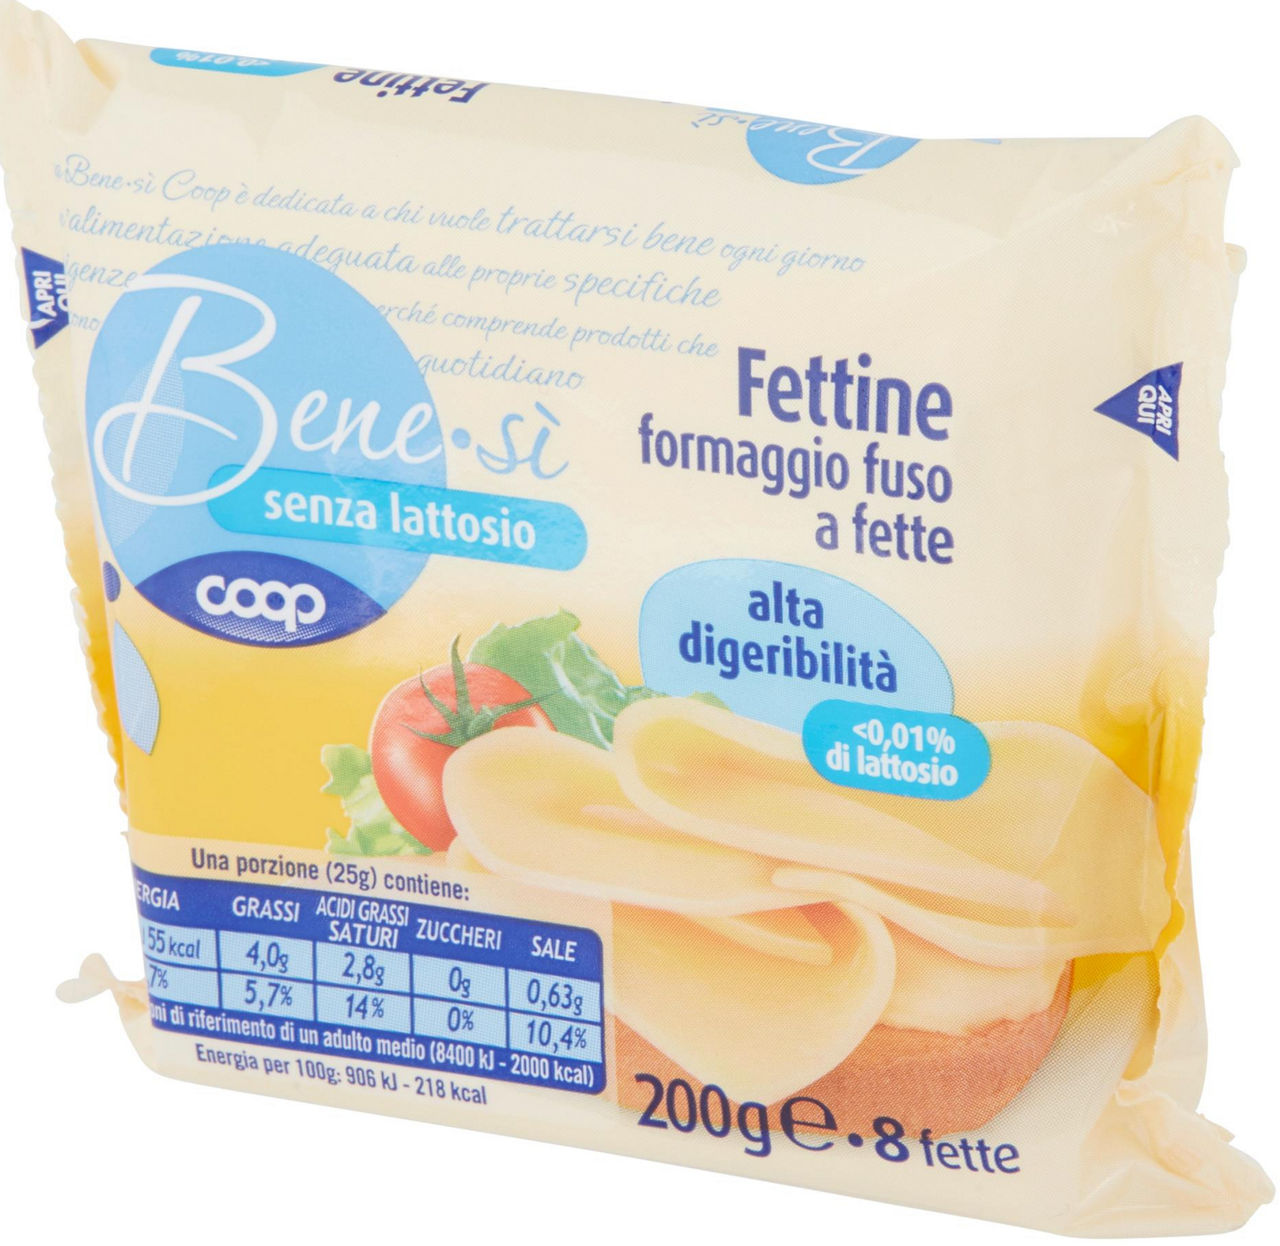 FETTINE SENZA LATTOSIO BENESÌ COOP G 200 - 6